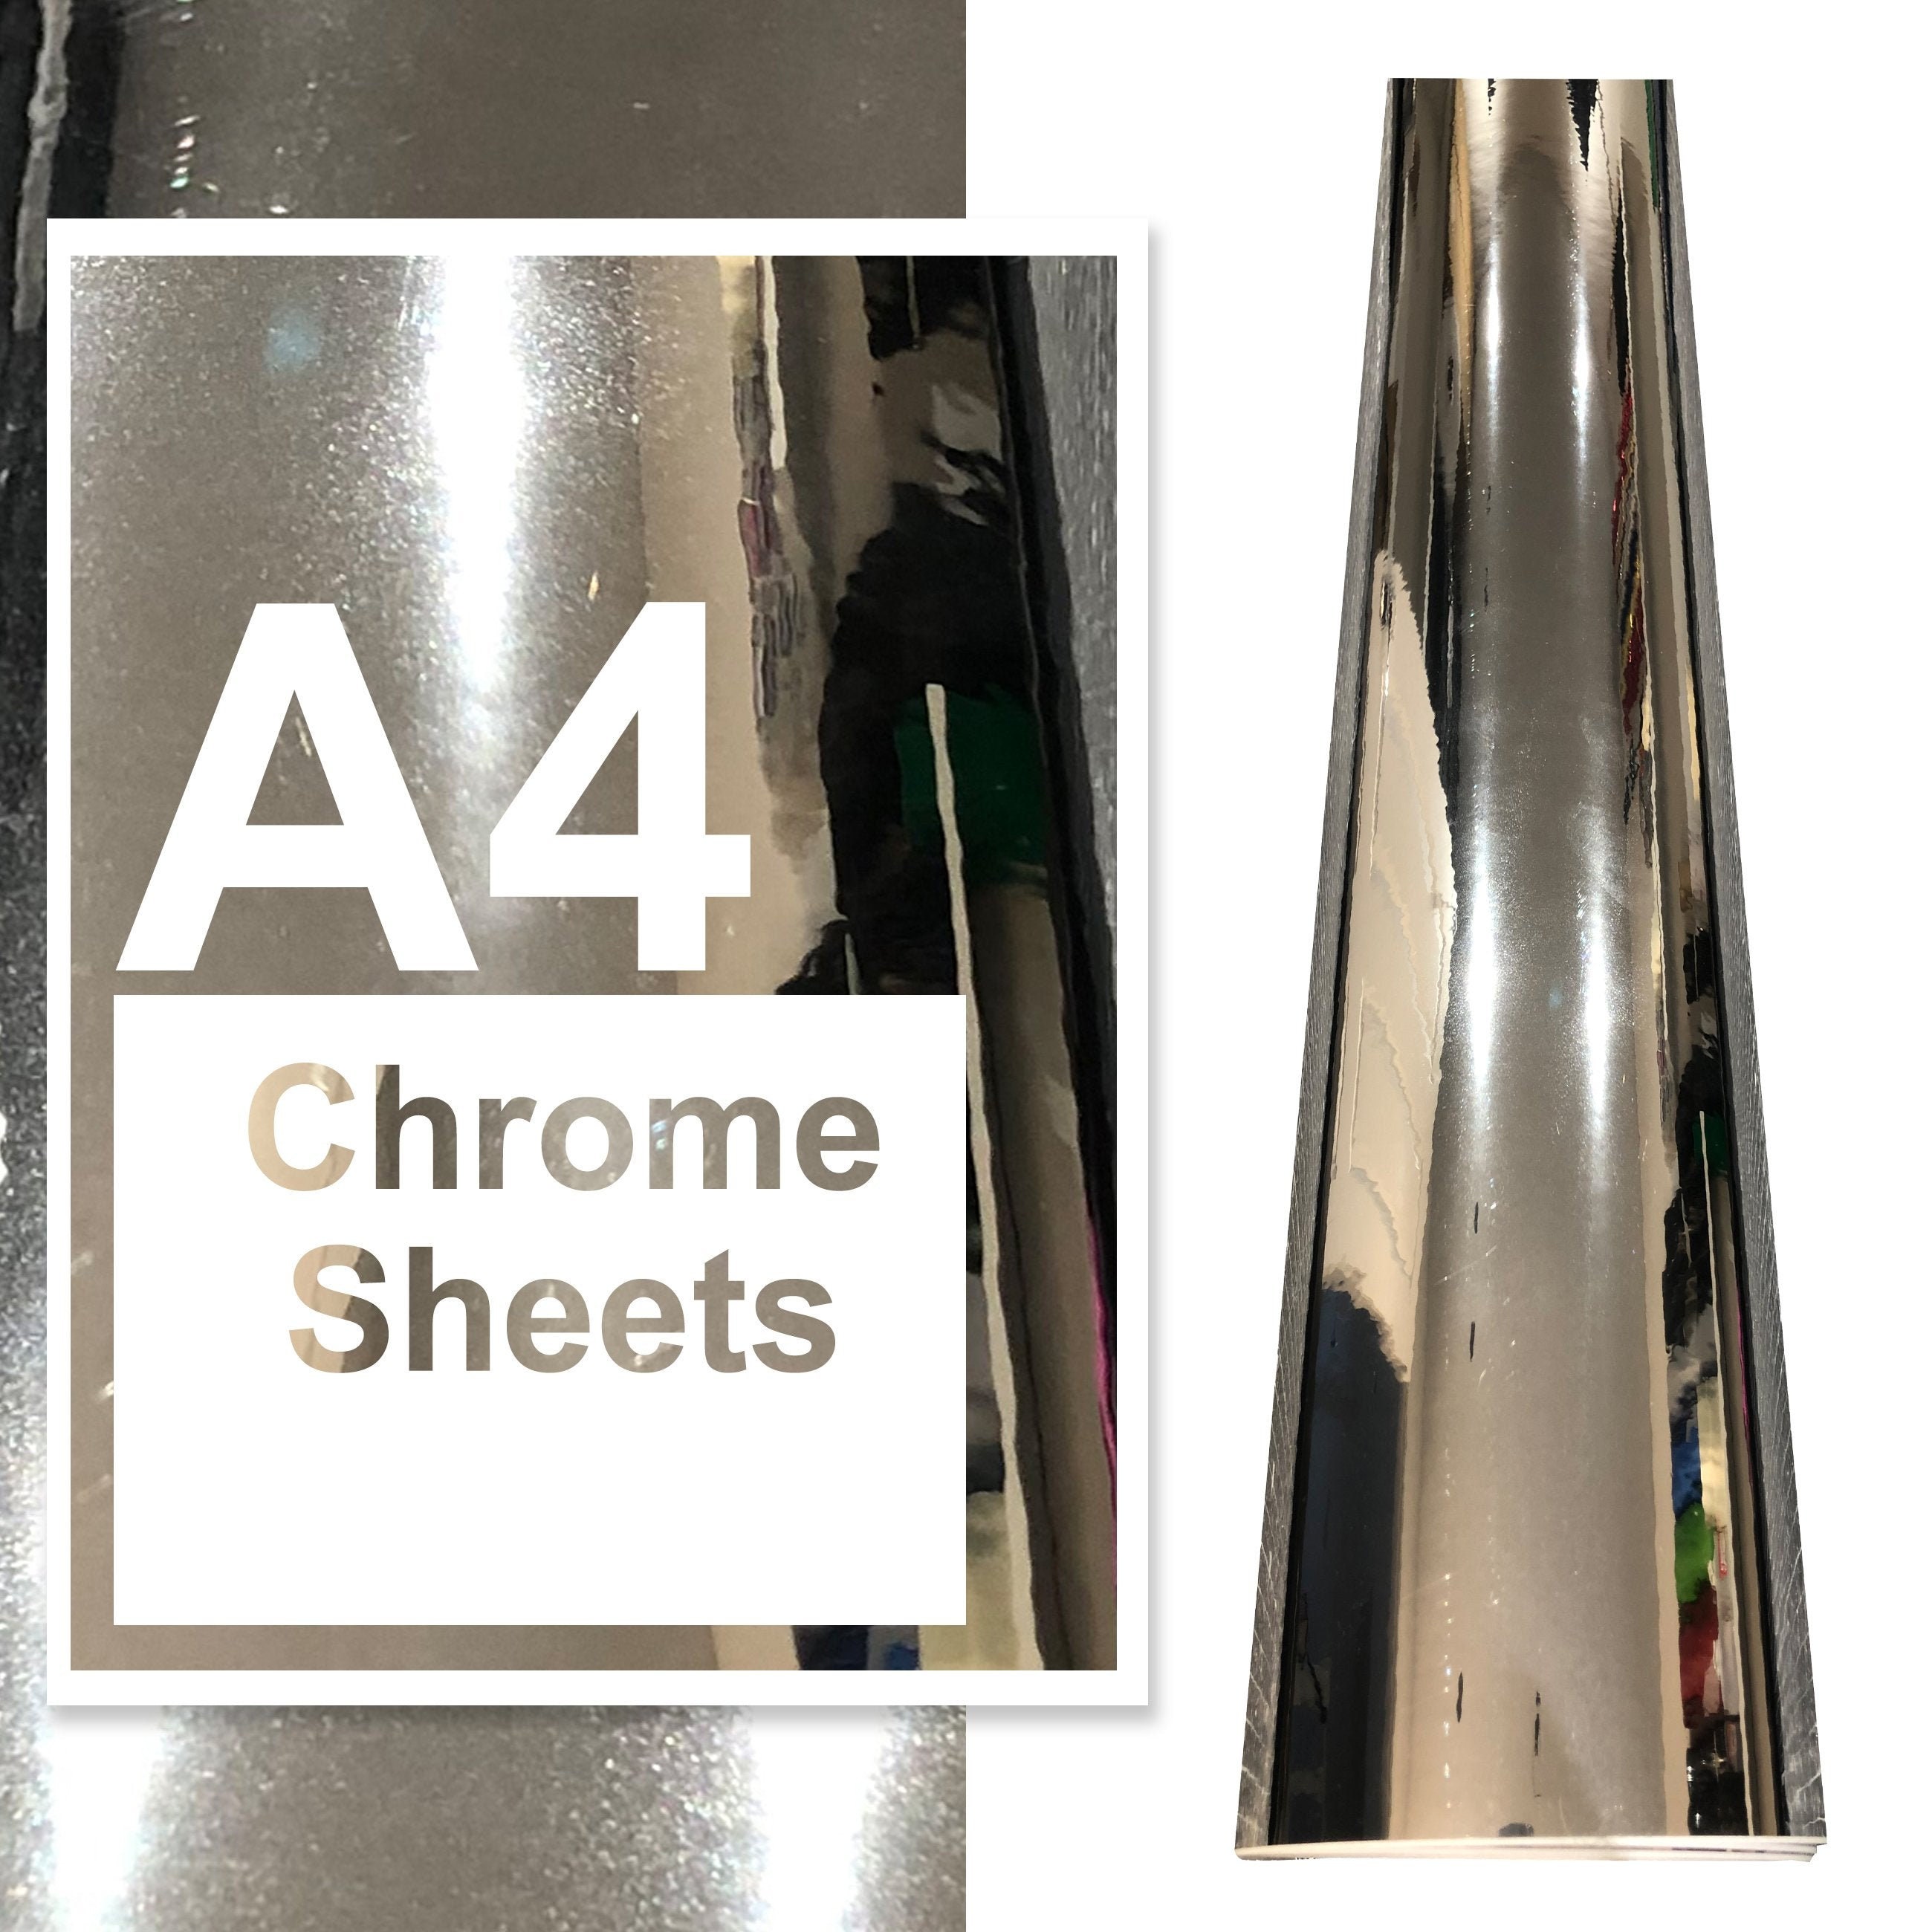 12 X 12 Chrome Vinyl Sheets, Metallic Vinyl, Self Adhesive Vinyl